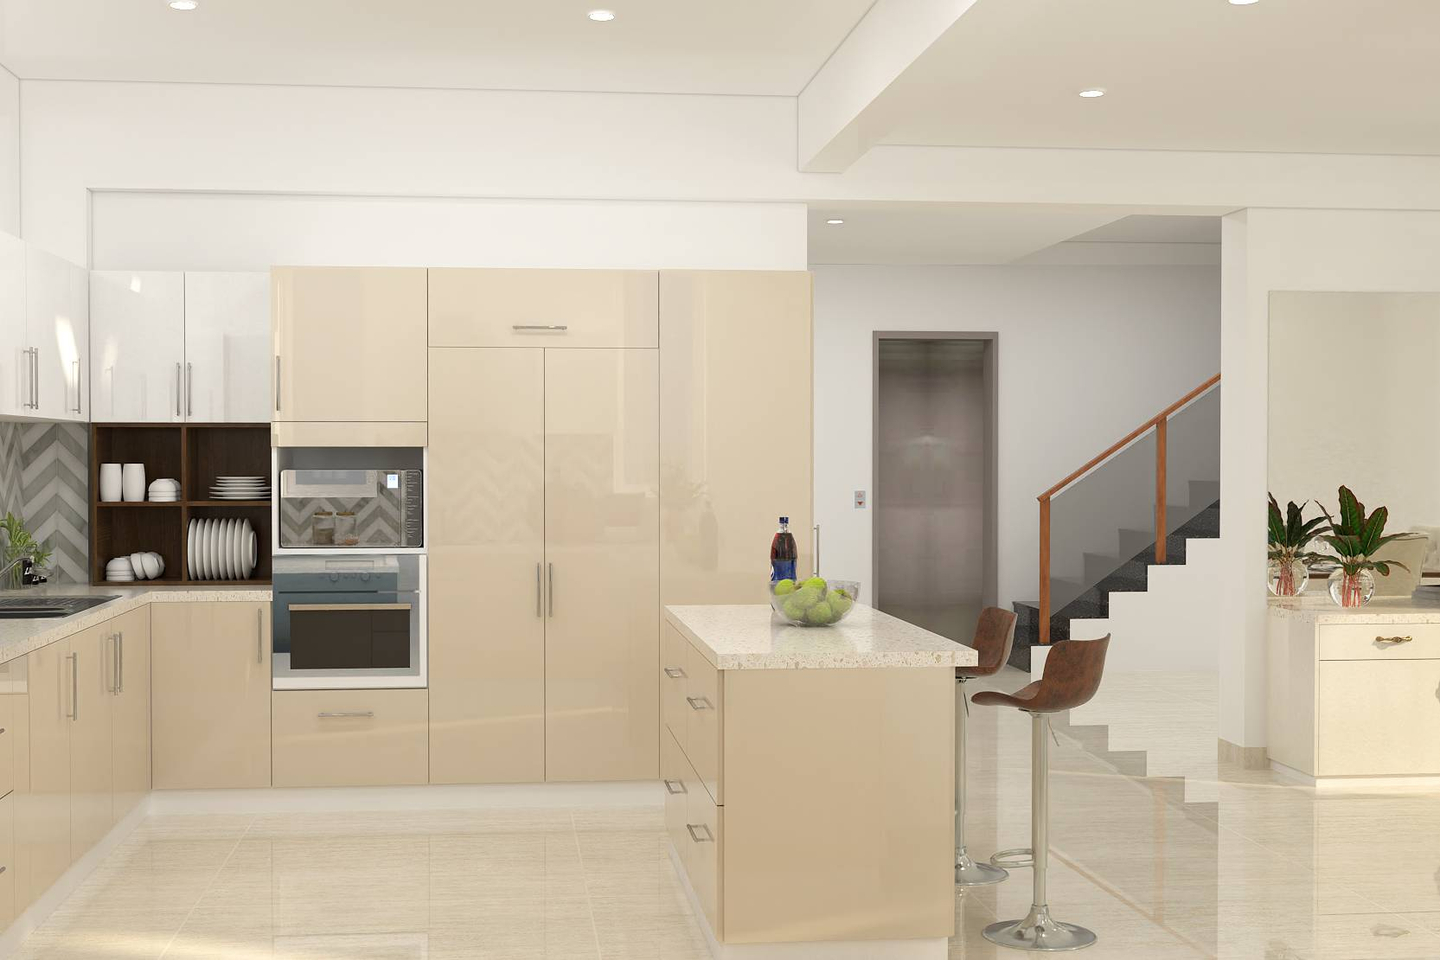 Spacious L-Shaped Modular Kitchen Interior Design With Subtle Colour Palette